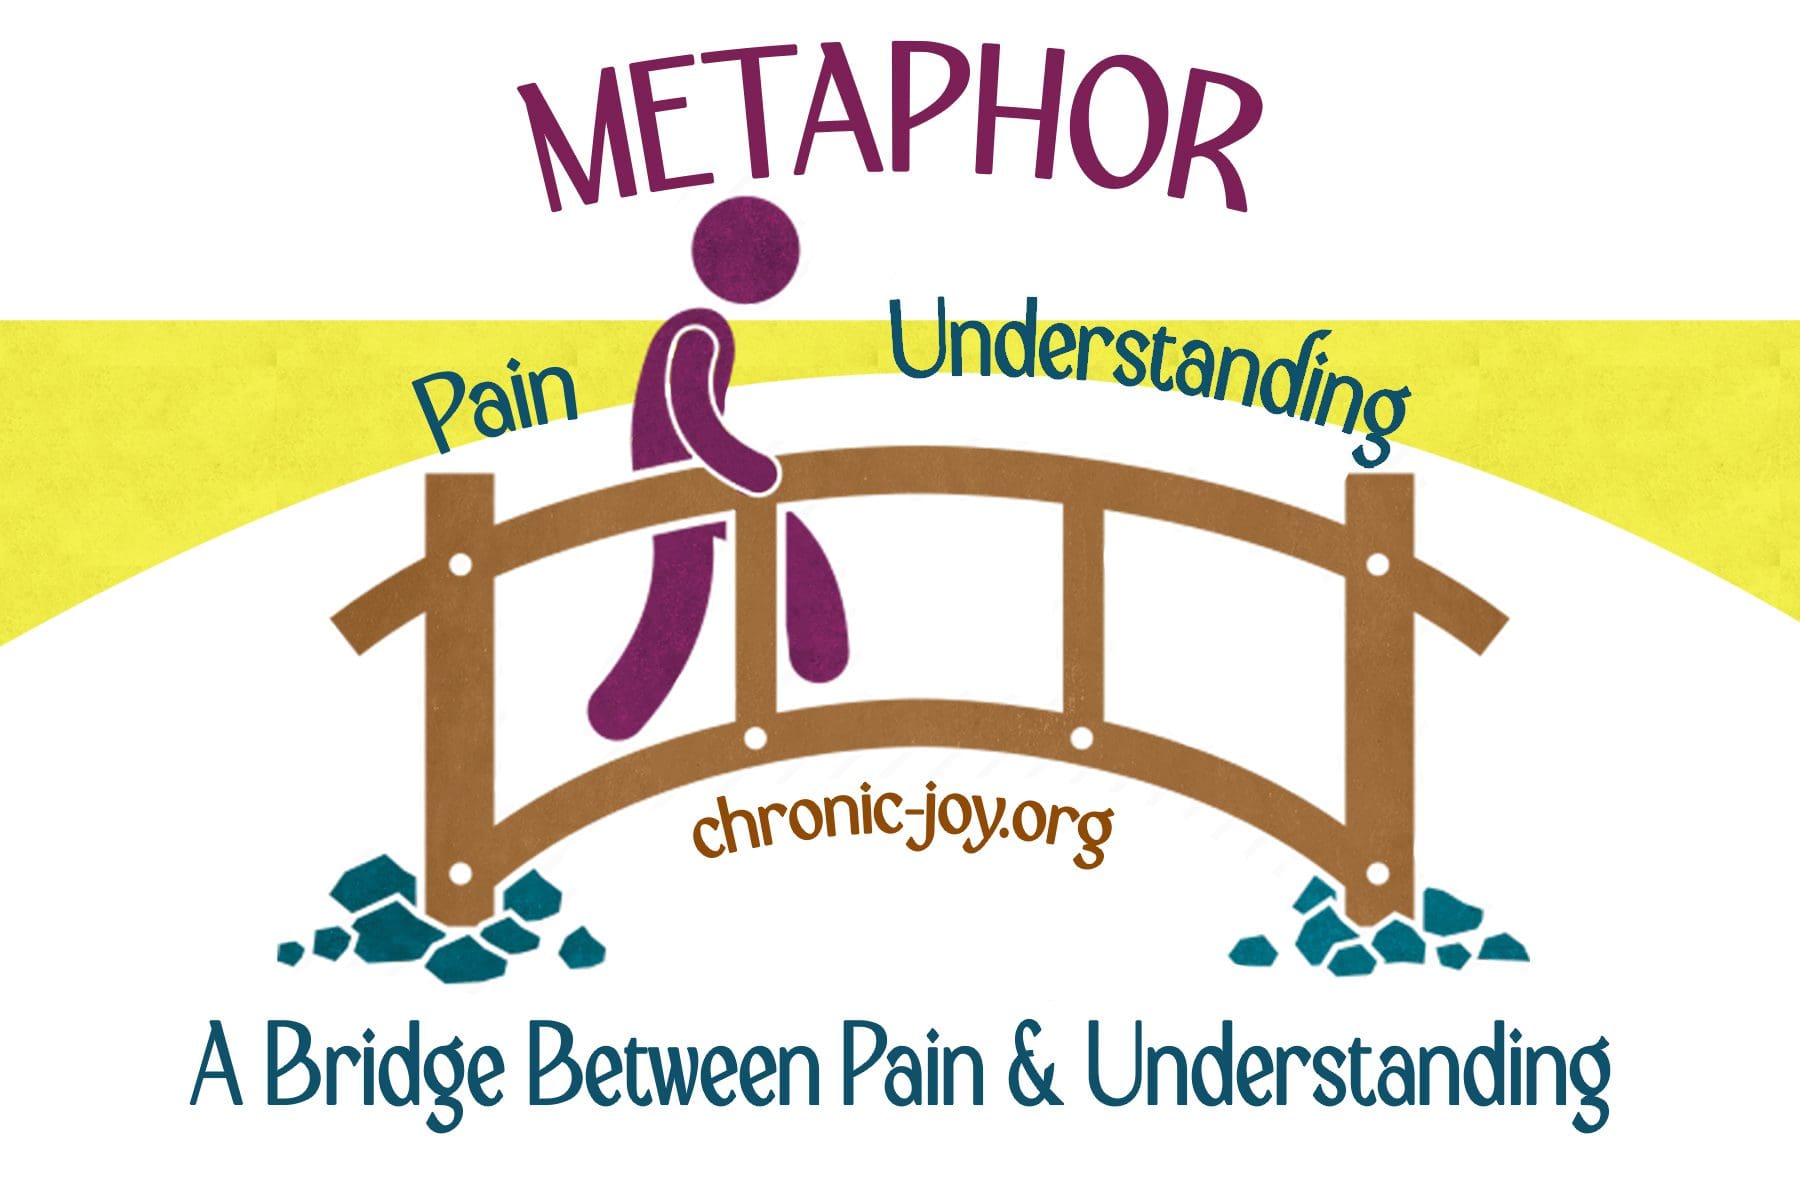 Metaphor • A Bridge Between Pain & Understanding